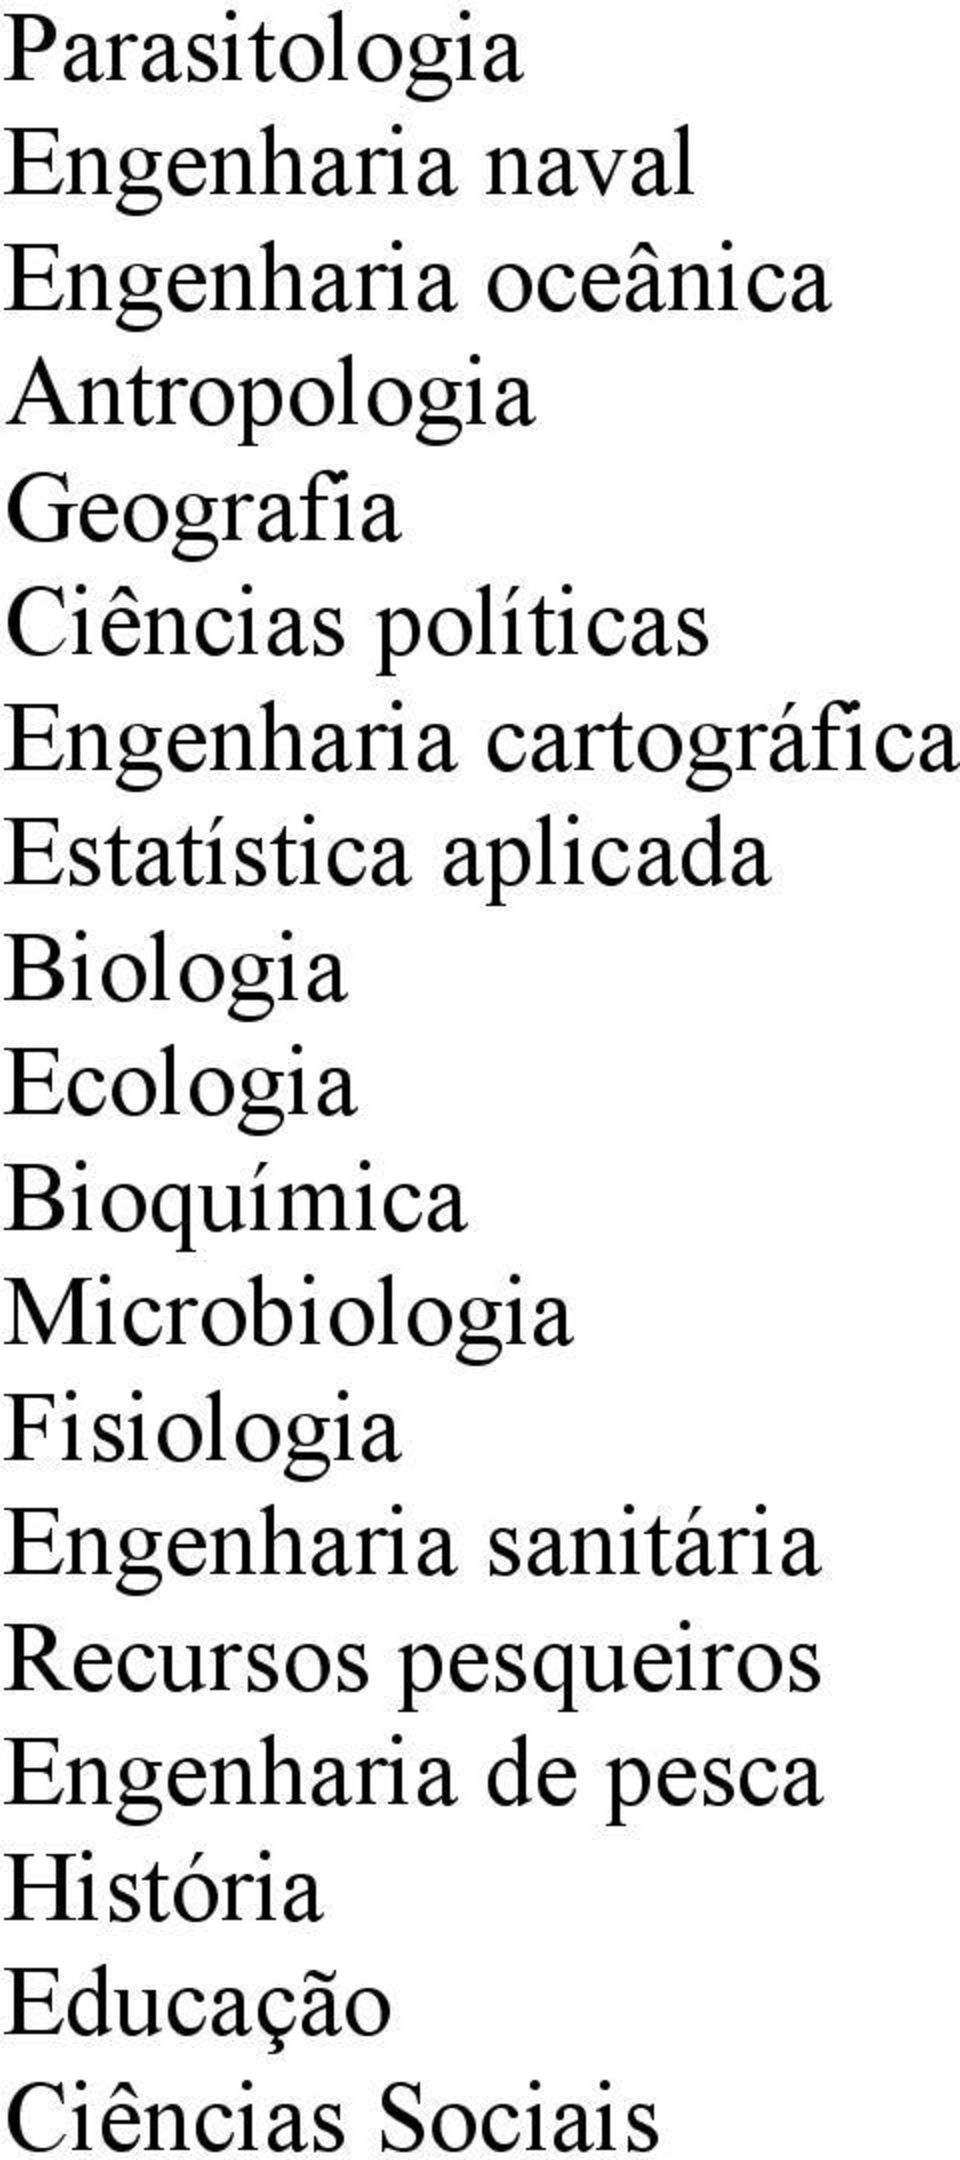 Ecologia Bioquímica Microbiologia Fisiologia Engenharia sanitária